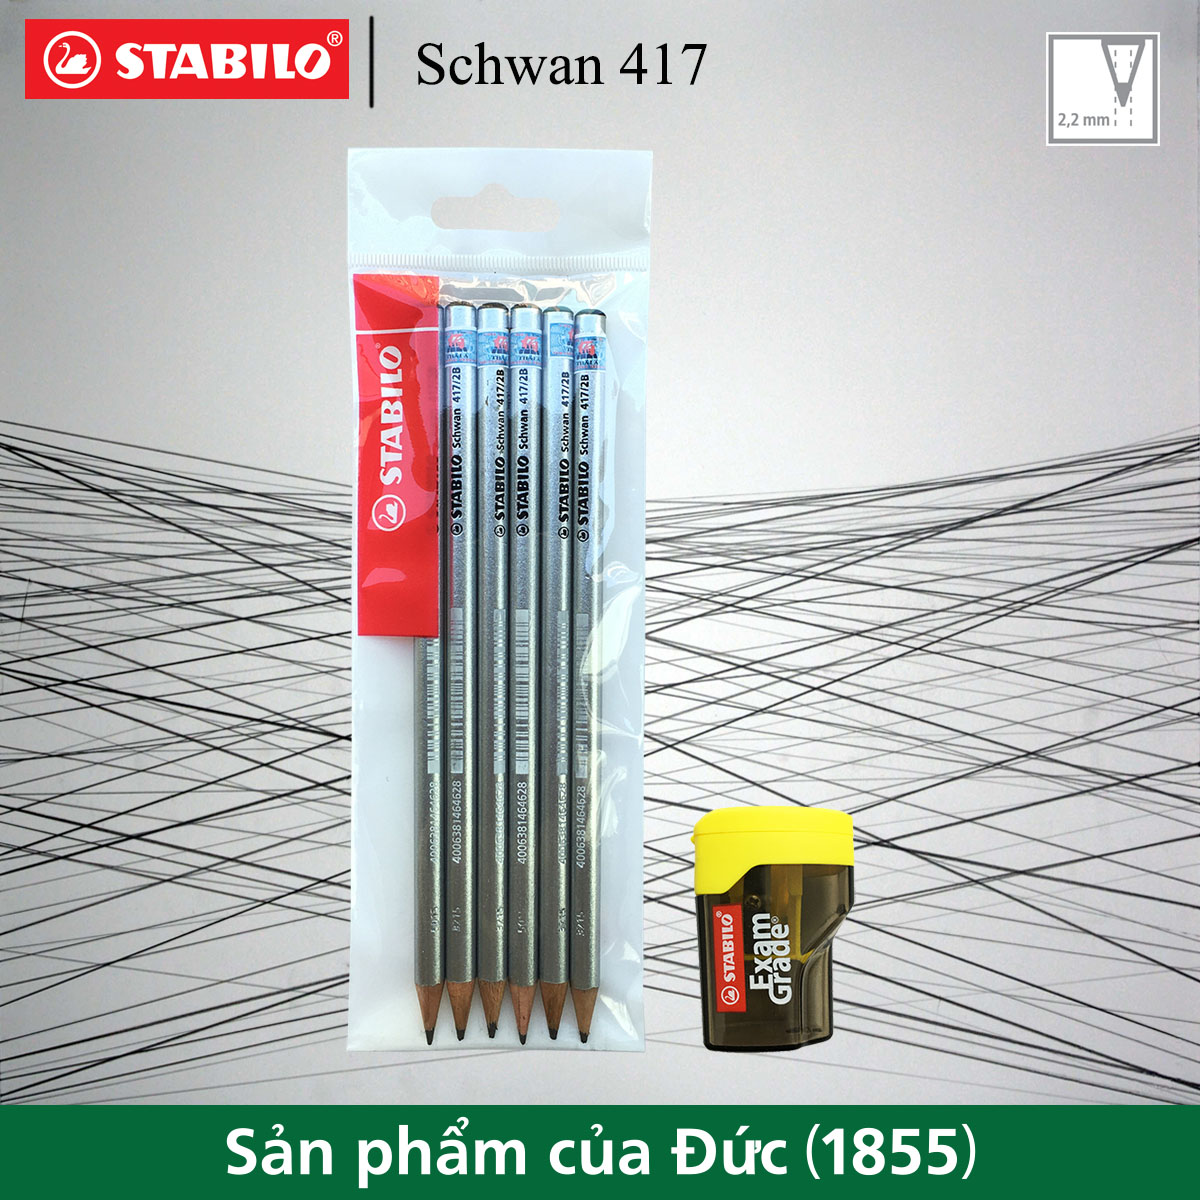 Bộ 6 cây bút chì gỗ STABILO Schwan PC417S